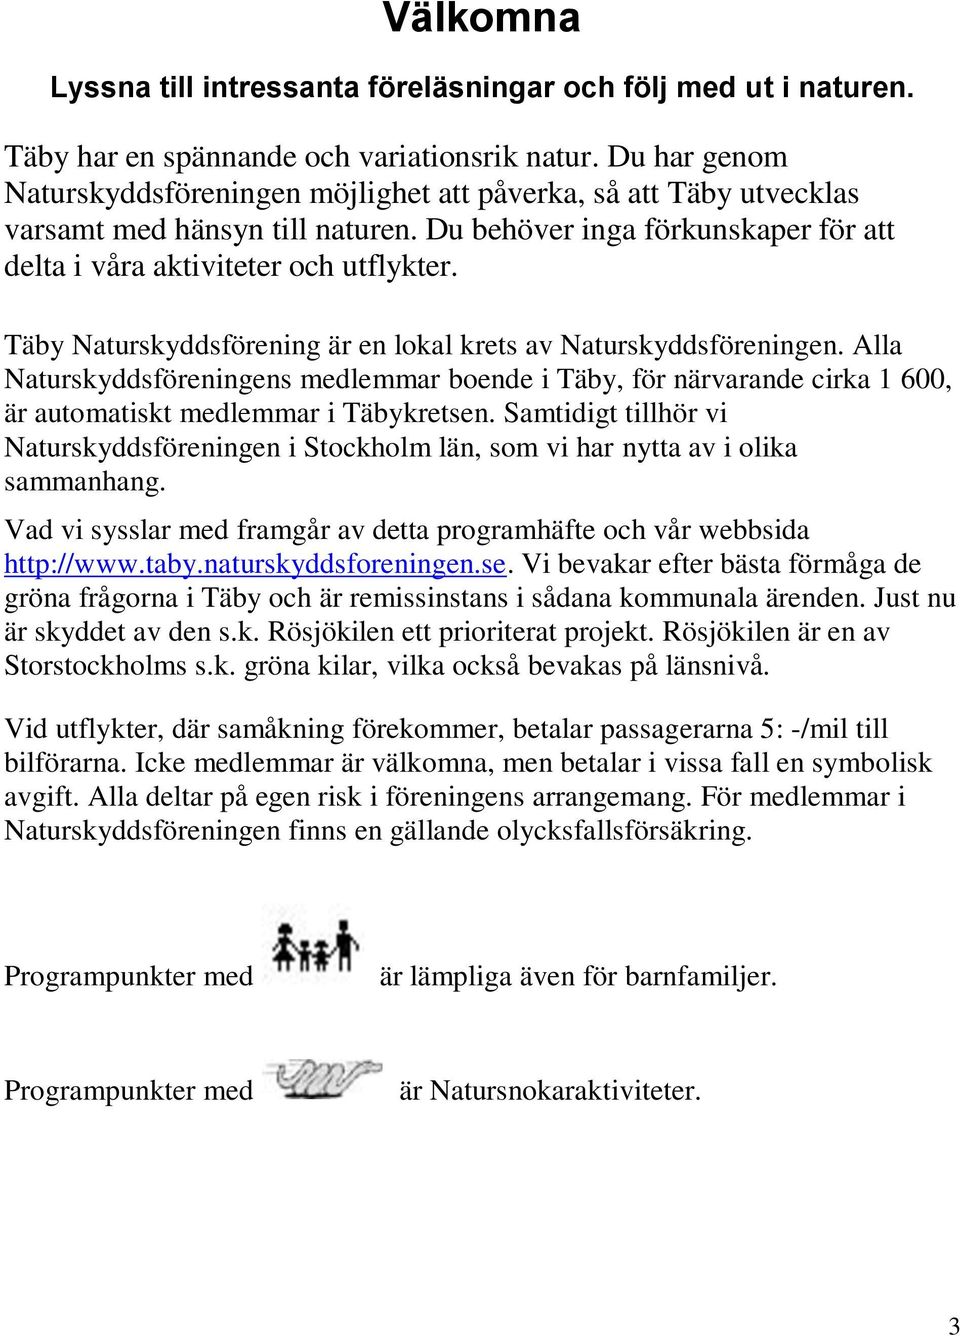 Täby Naturskyddsförening är en lokal krets av Naturskyddsföreningen. Alla Naturskyddsföreningens medlemmar boende i Täby, för närvarande cirka 1 600, är automatiskt medlemmar i Täbykretsen.